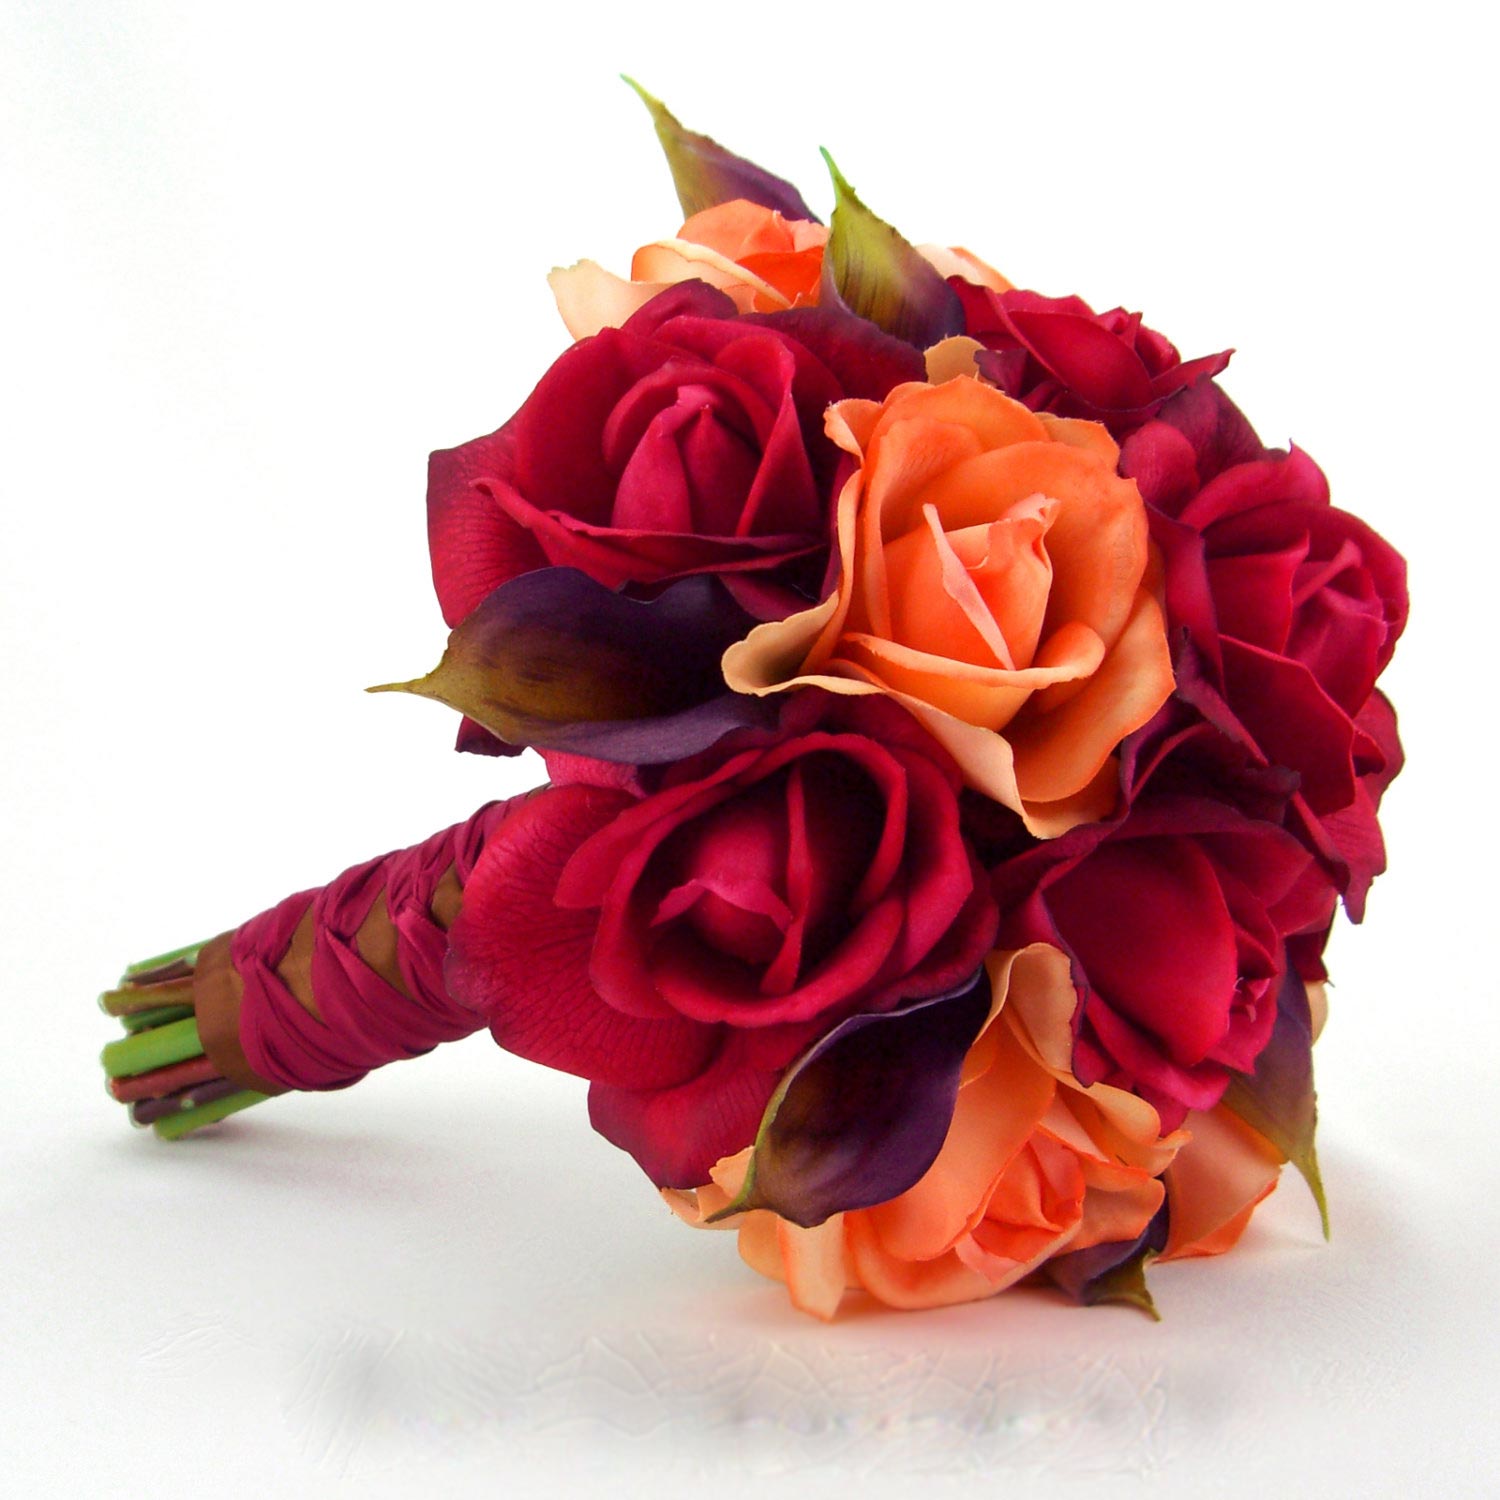 Hoa cưới cầm tay kết từ hoa hồng cam, hồng đỏ và hoa rum tím